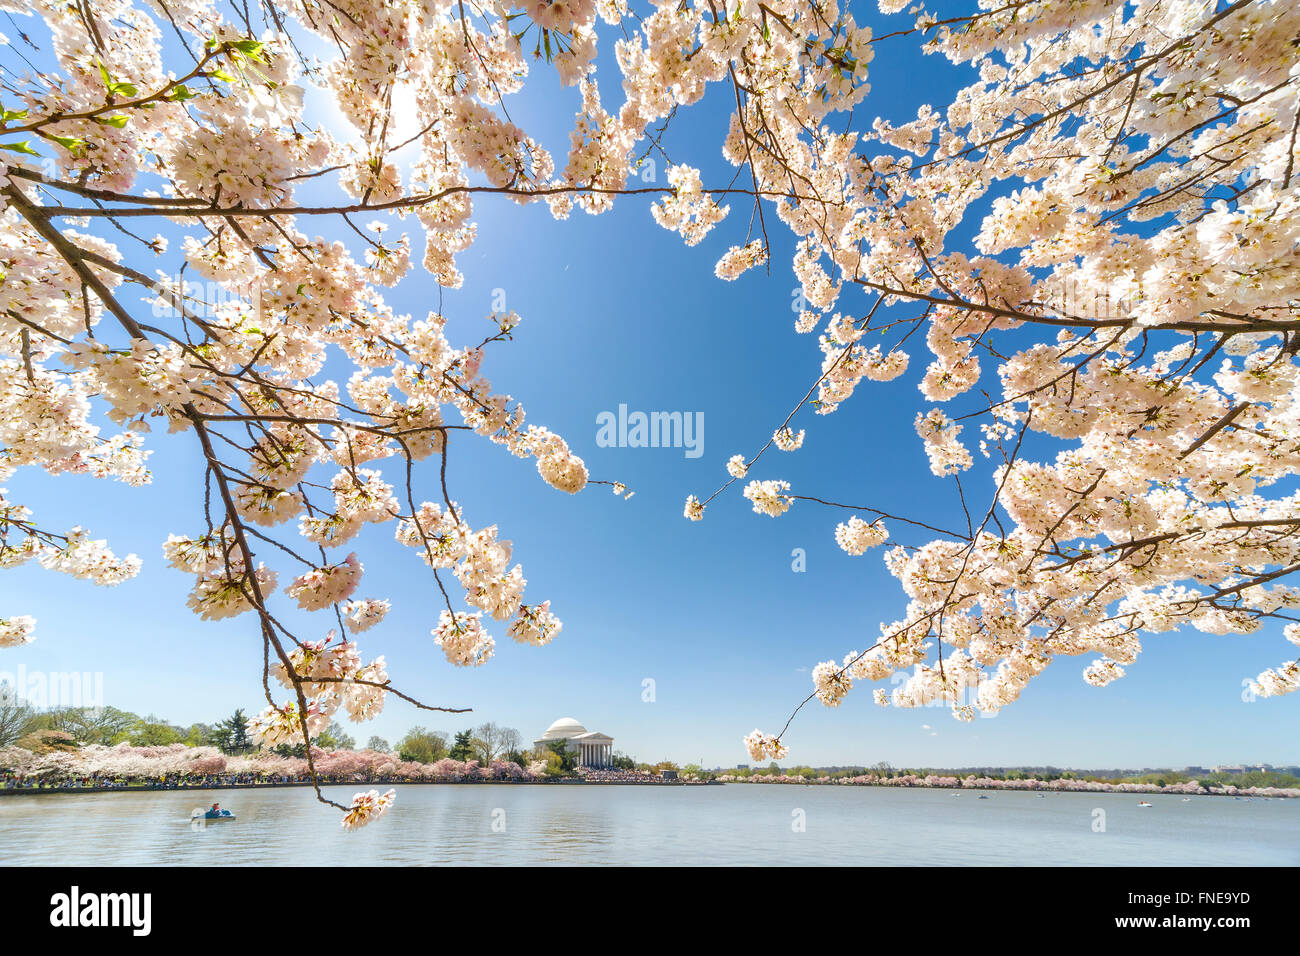 Washington DC National Cherry Blossom Festival. La fioritura dei ciliegi in fiore di picco in corrispondenza del bacino di marea con il Jefferson Memorial. Foto Stock